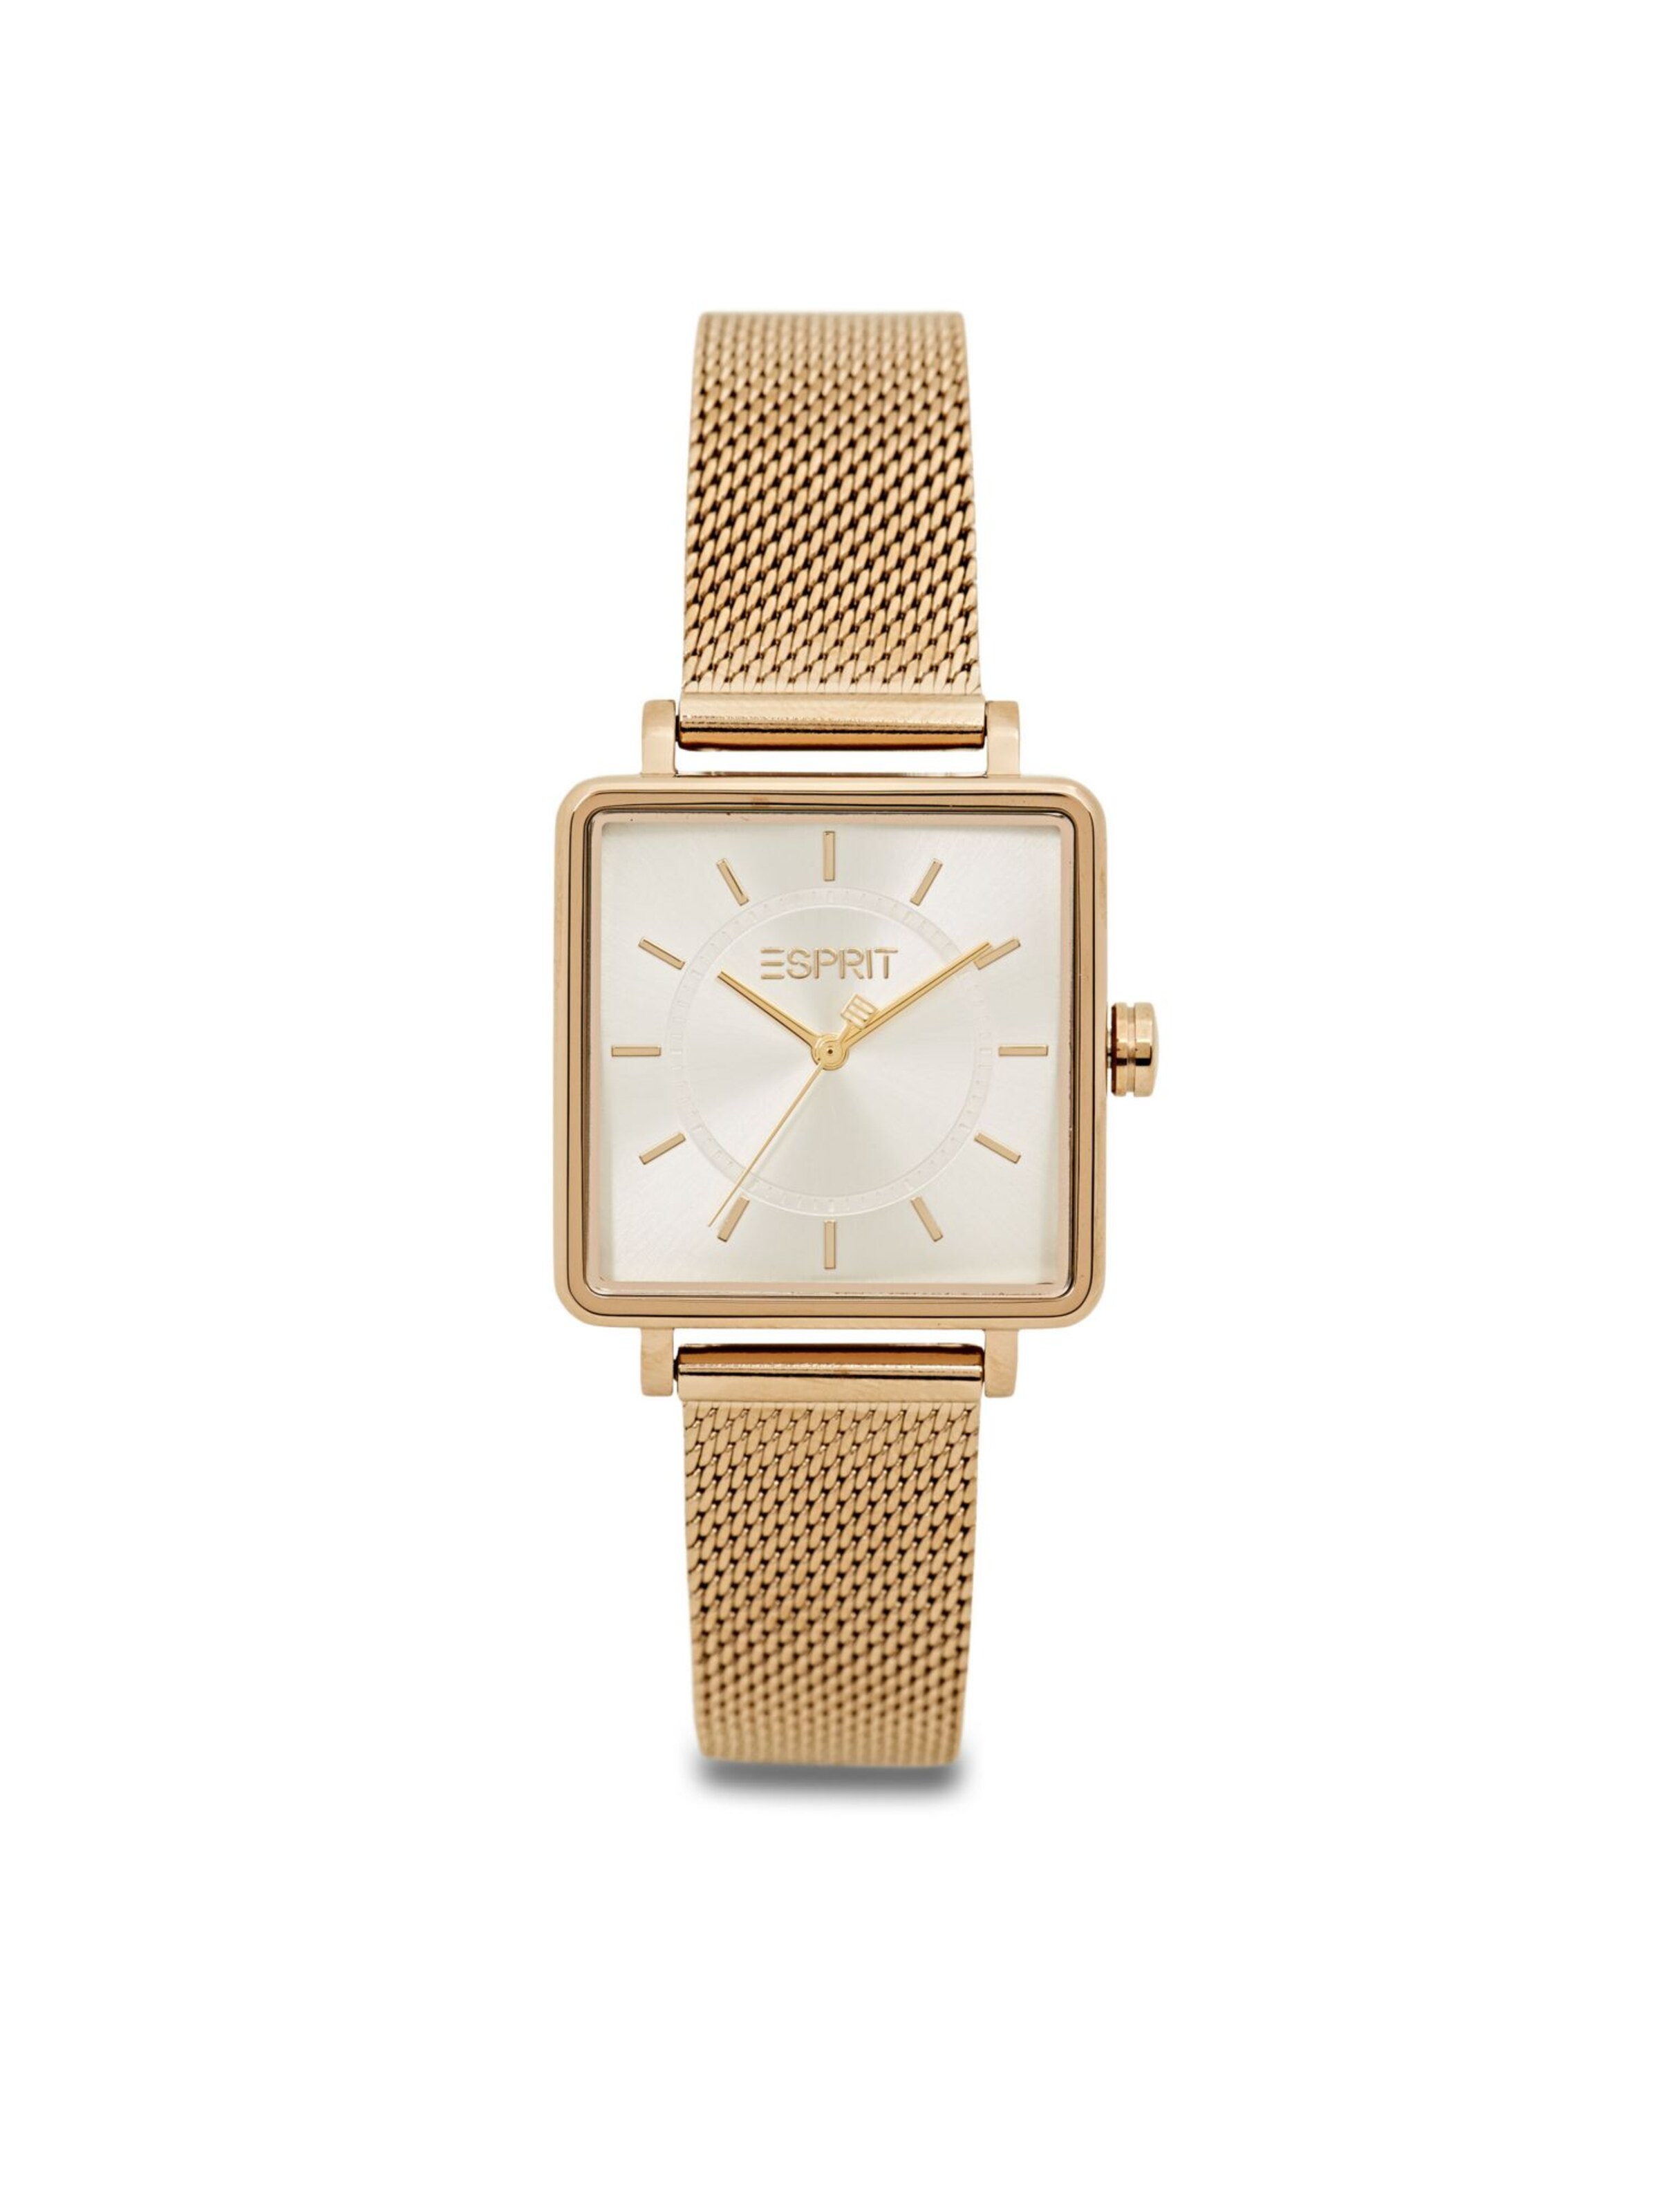 Frauen Uhren ESPRIT Uhr in Gold - DG33814